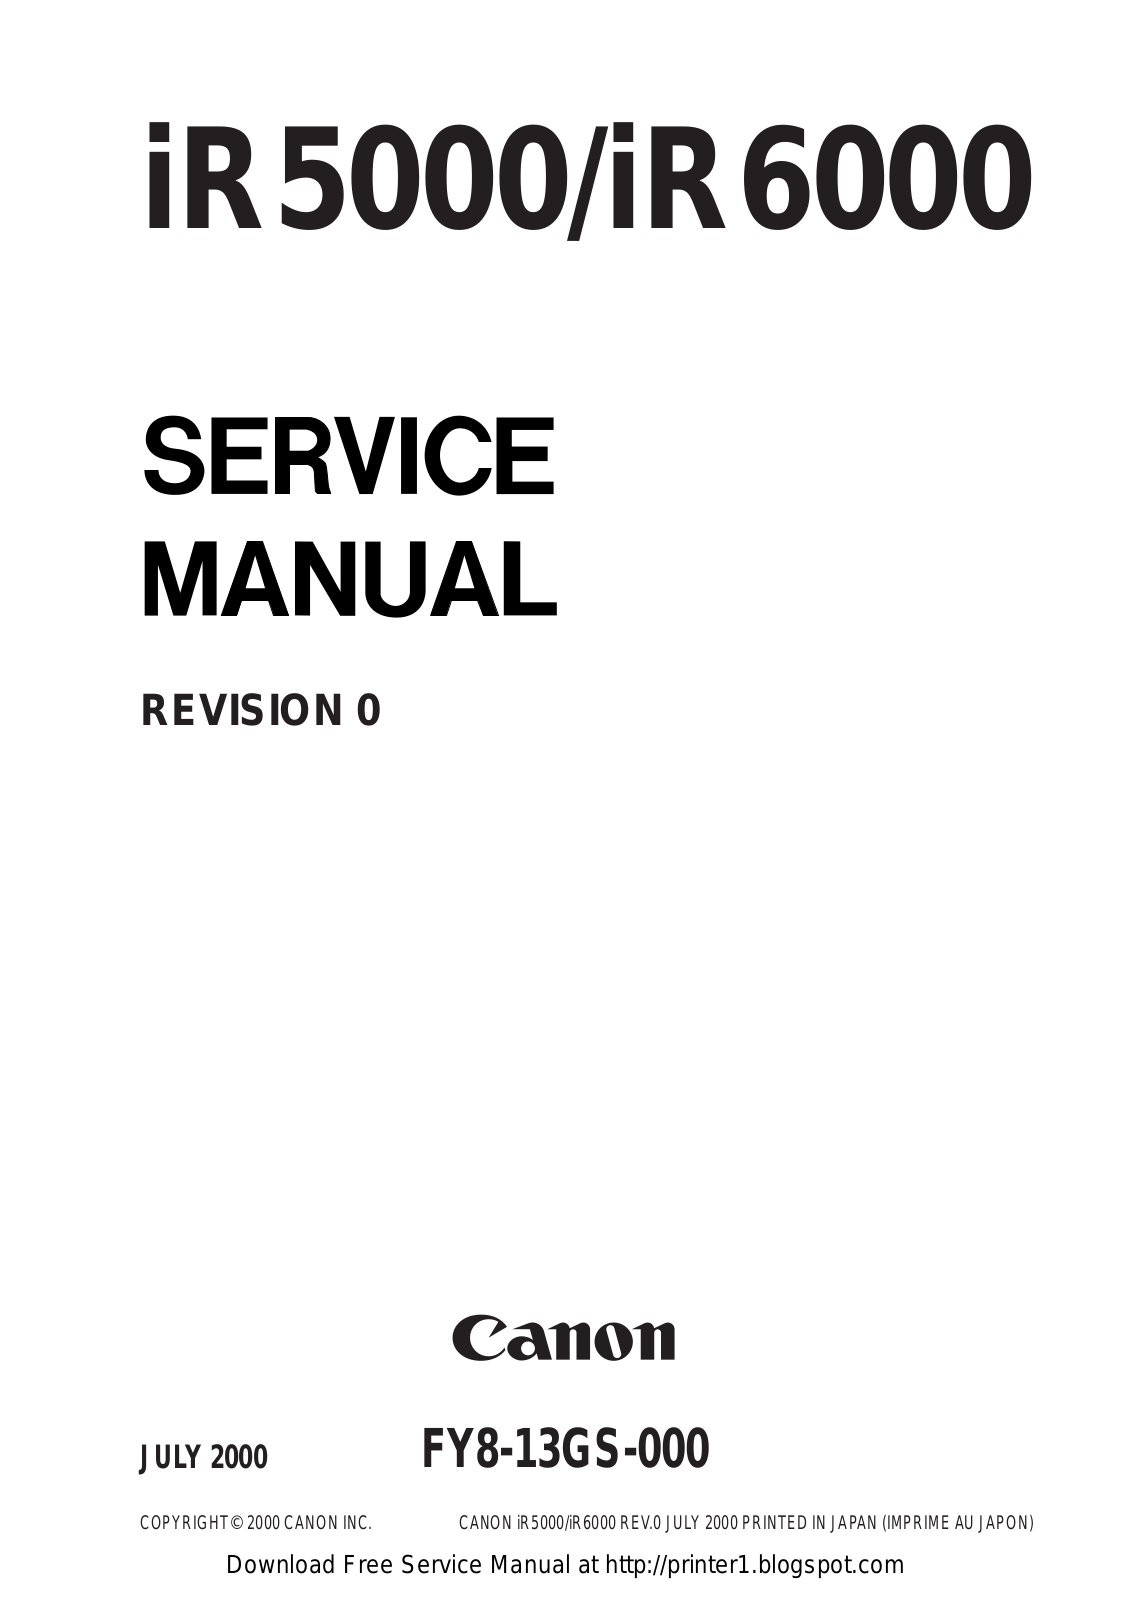 Canon iR5000, iR6000 Service Manual